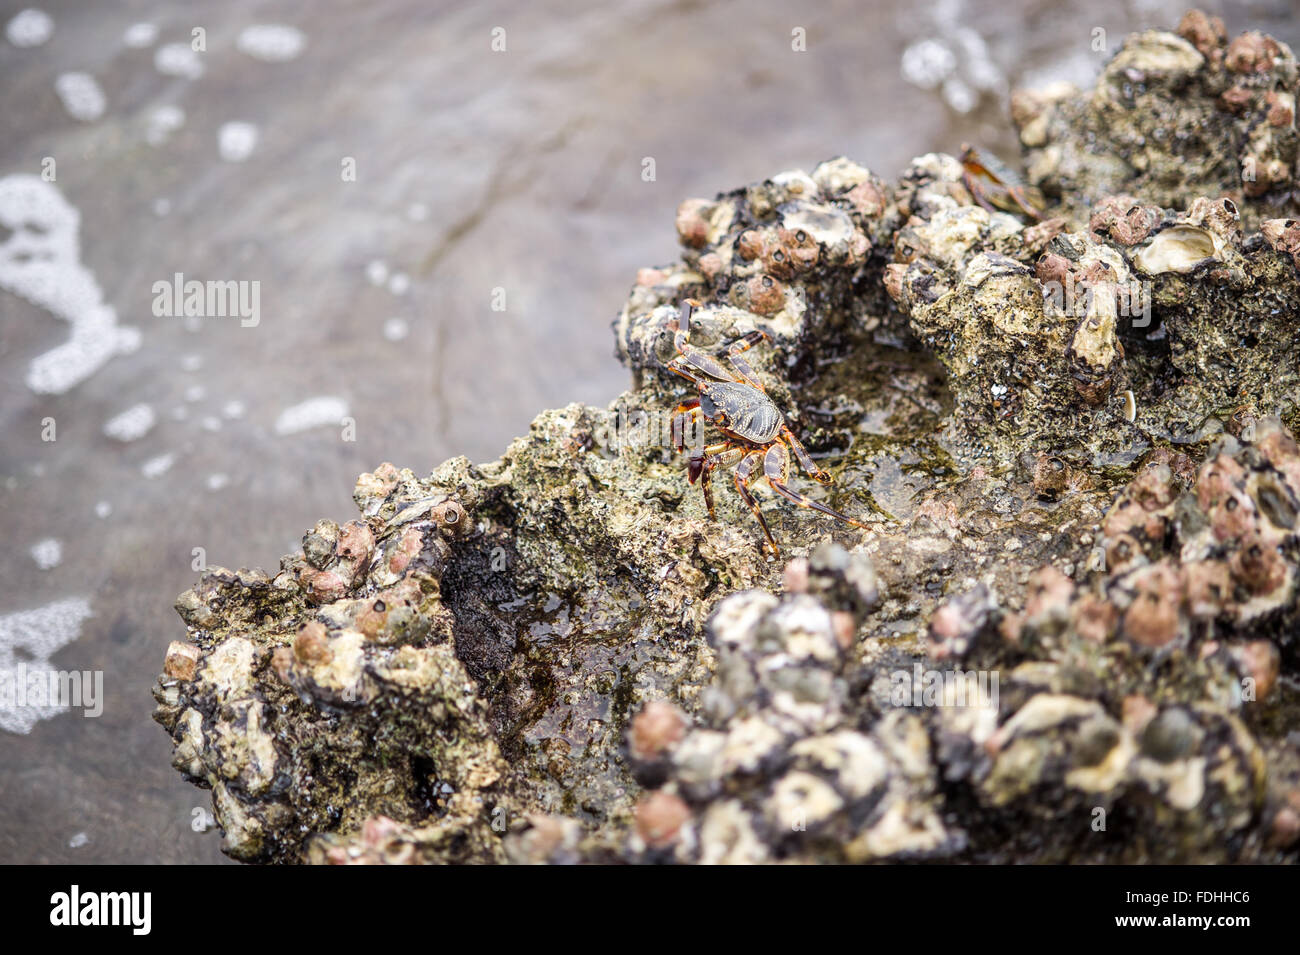 Le mélange Crabe natal dans des roches à Sainte Lucie, Kwazulu-Natal, Afrique du Sud - Parc iSimangaliso Wetland Park Banque D'Images